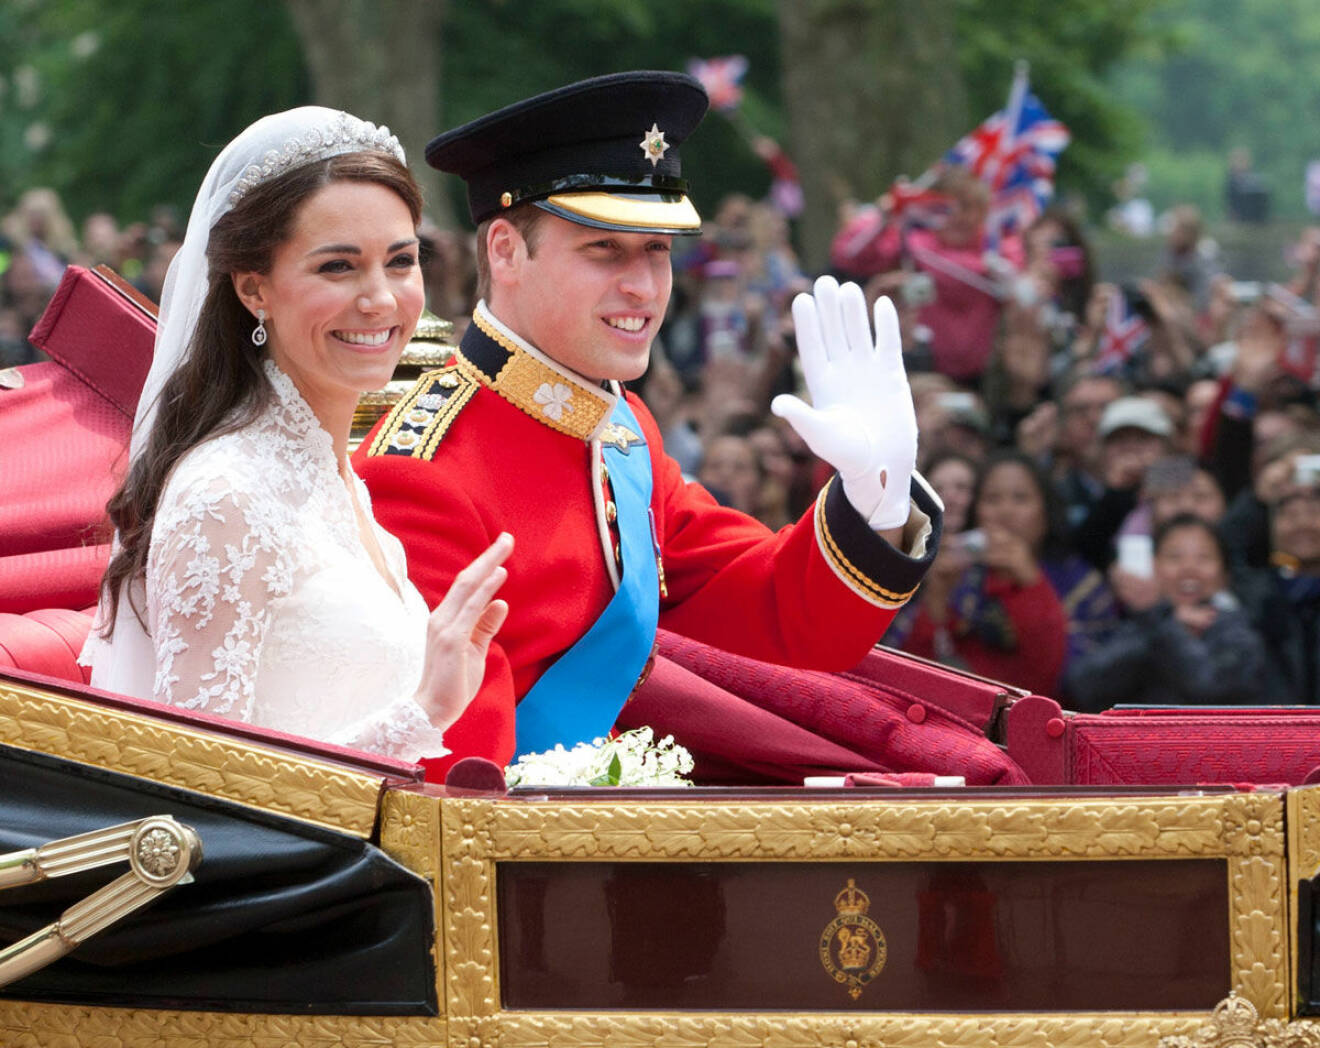 Hertiginnan Kate och prins William ser lyckliga ut. De vinkar till folket. 